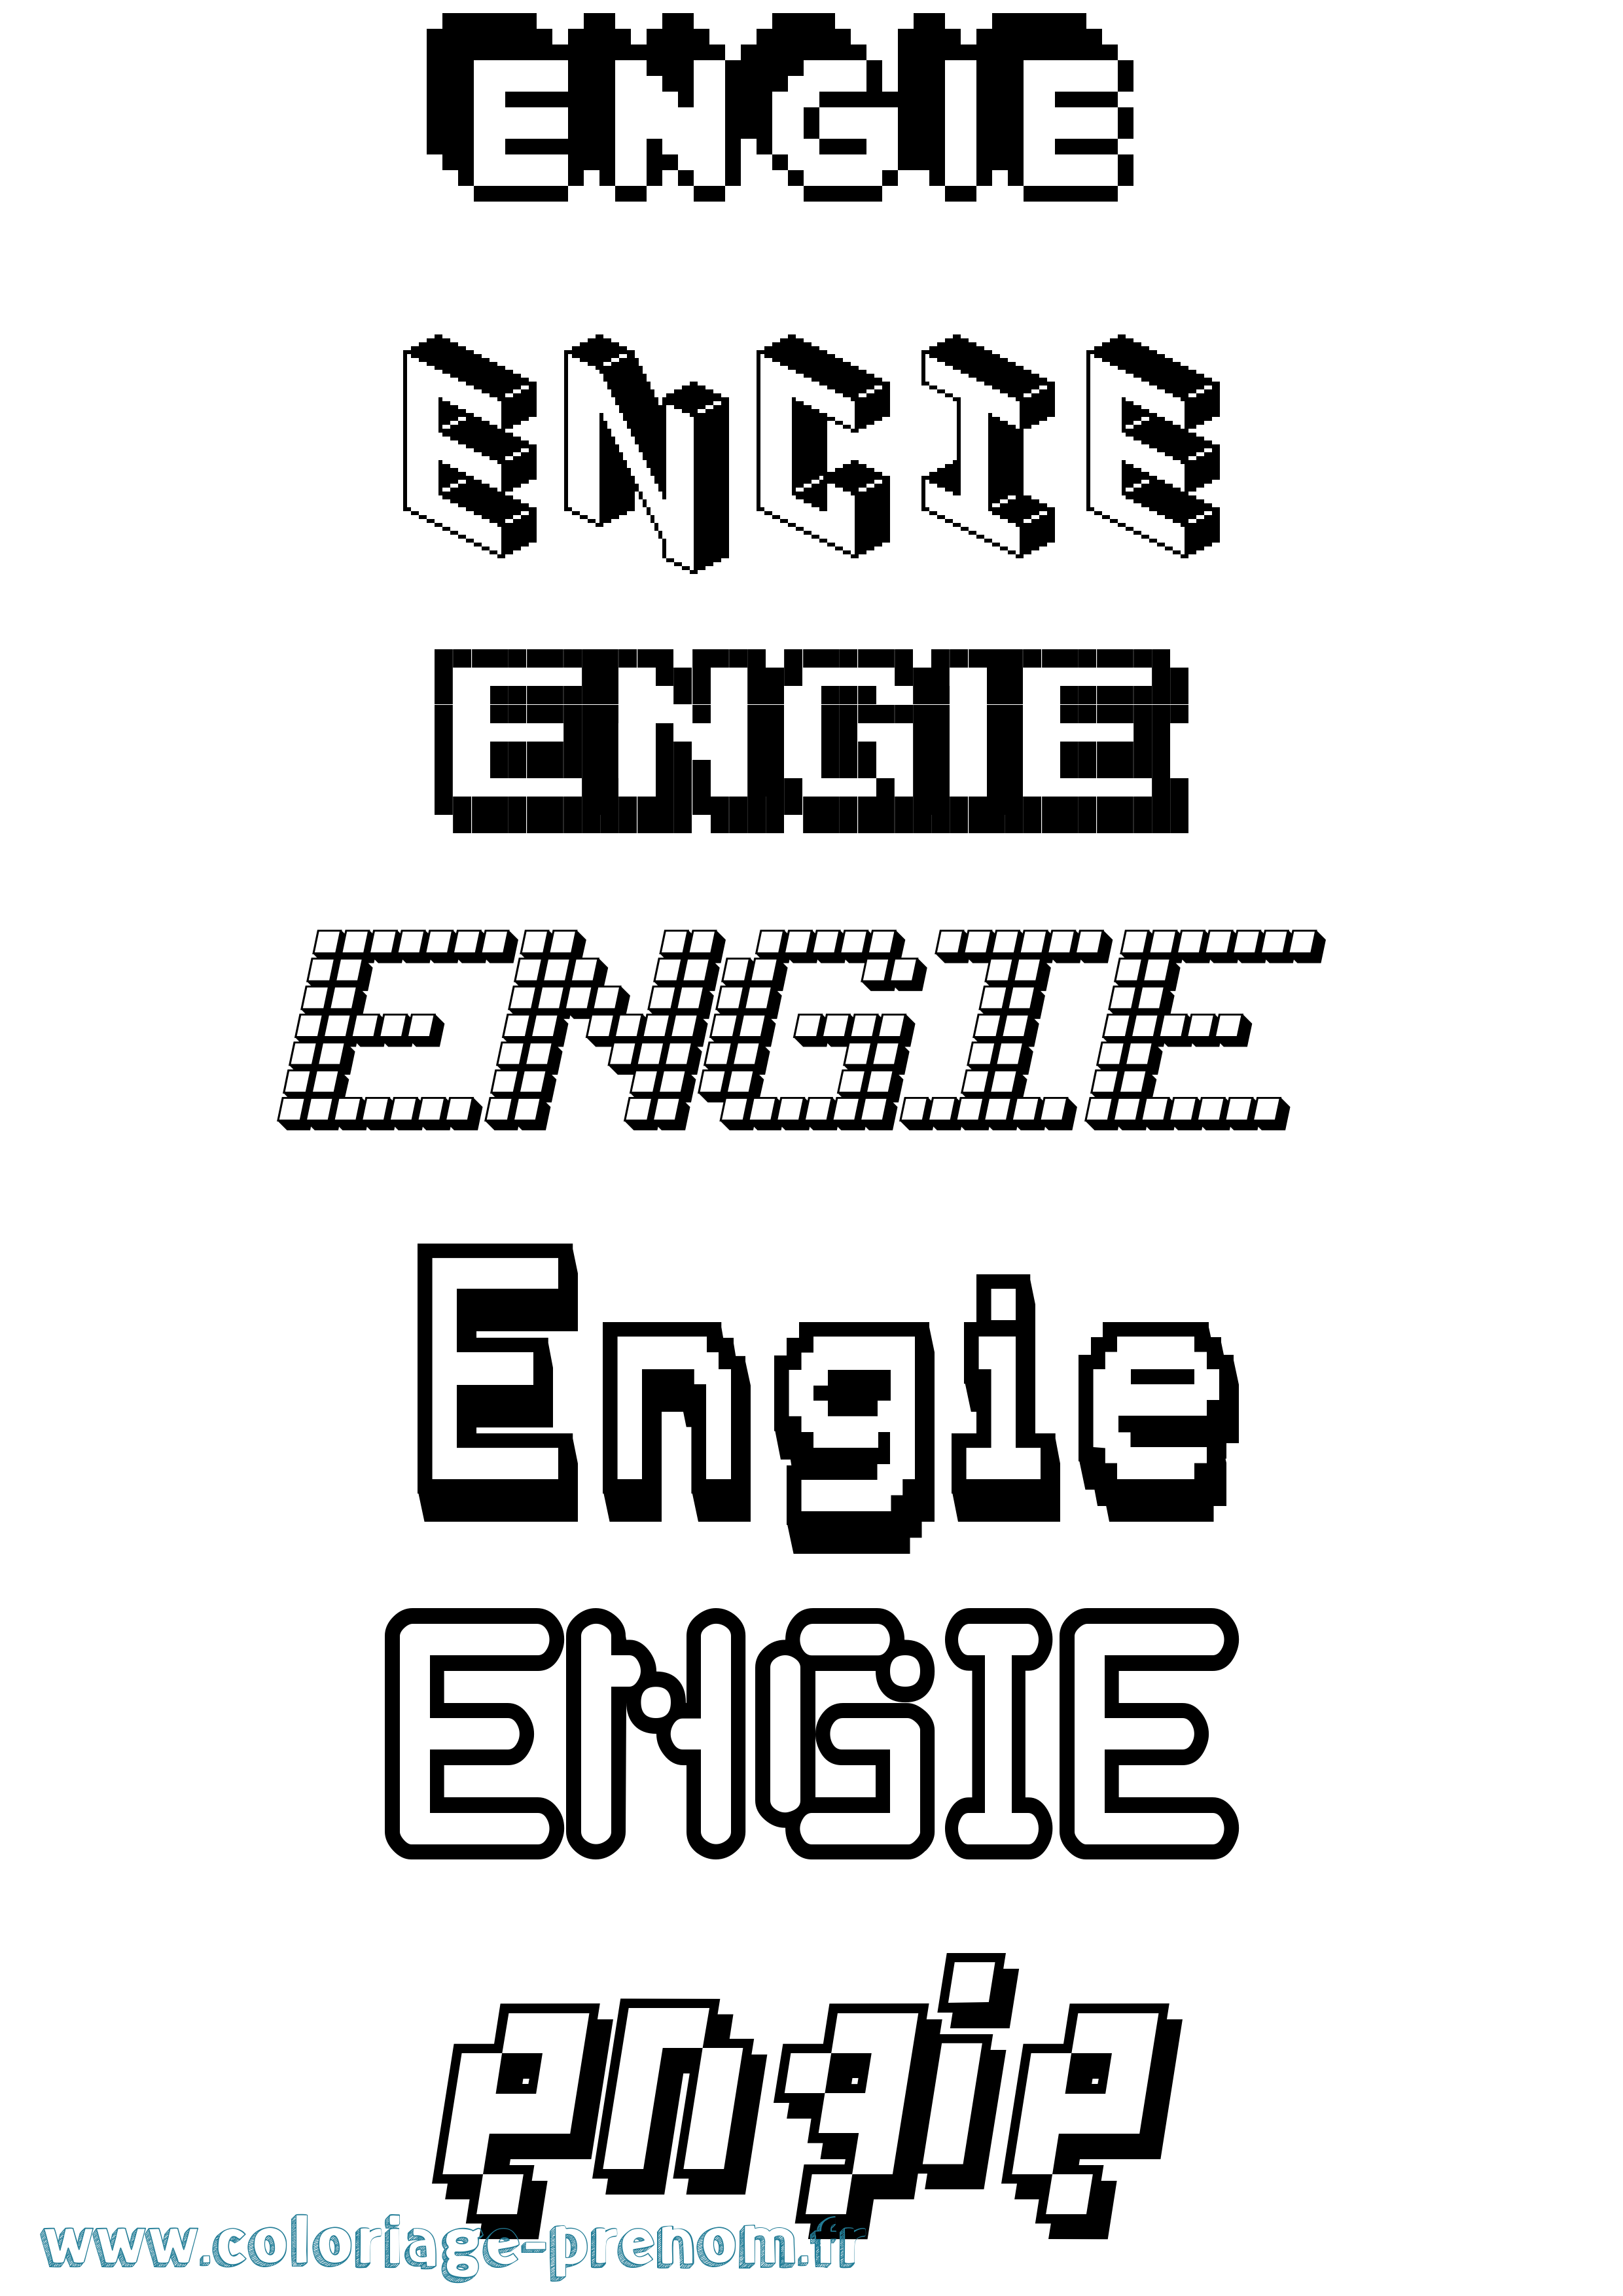 Coloriage prénom Engie Pixel